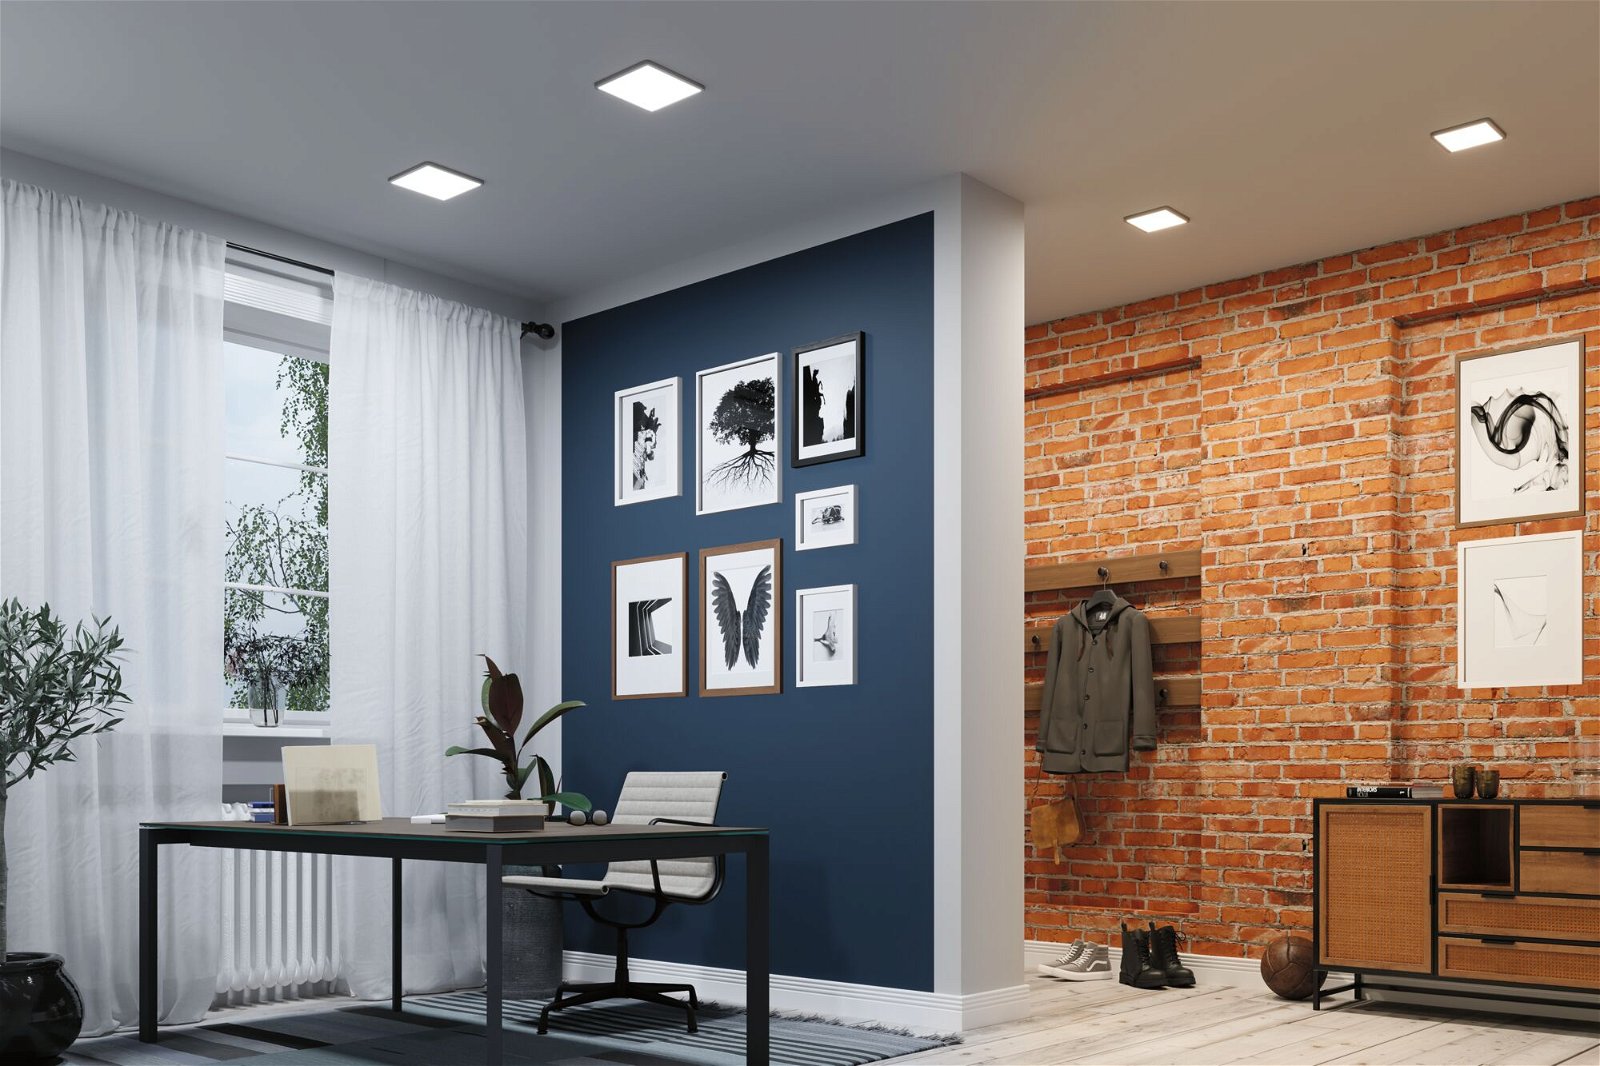 VariFit LED-inbouwpaneel Smart Home Zigbee Areo IP44 hoekig 230x230mm 16W 1400lm Tunable White Zwart dimbaar